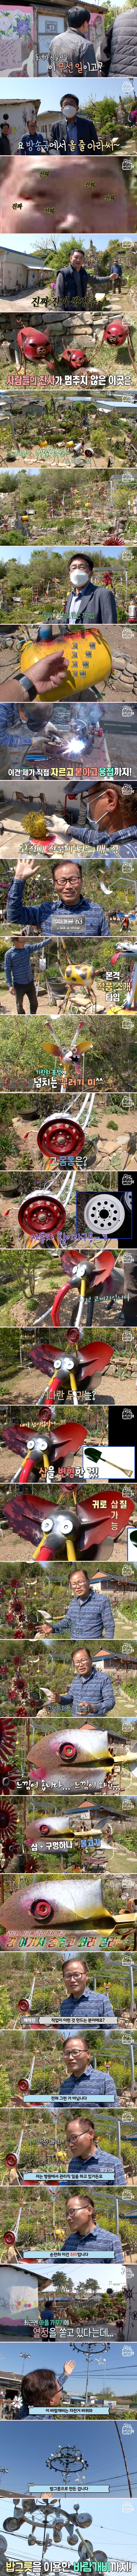 고철을 이용해 특별한 정원을 만드는 남자 (1).jpg